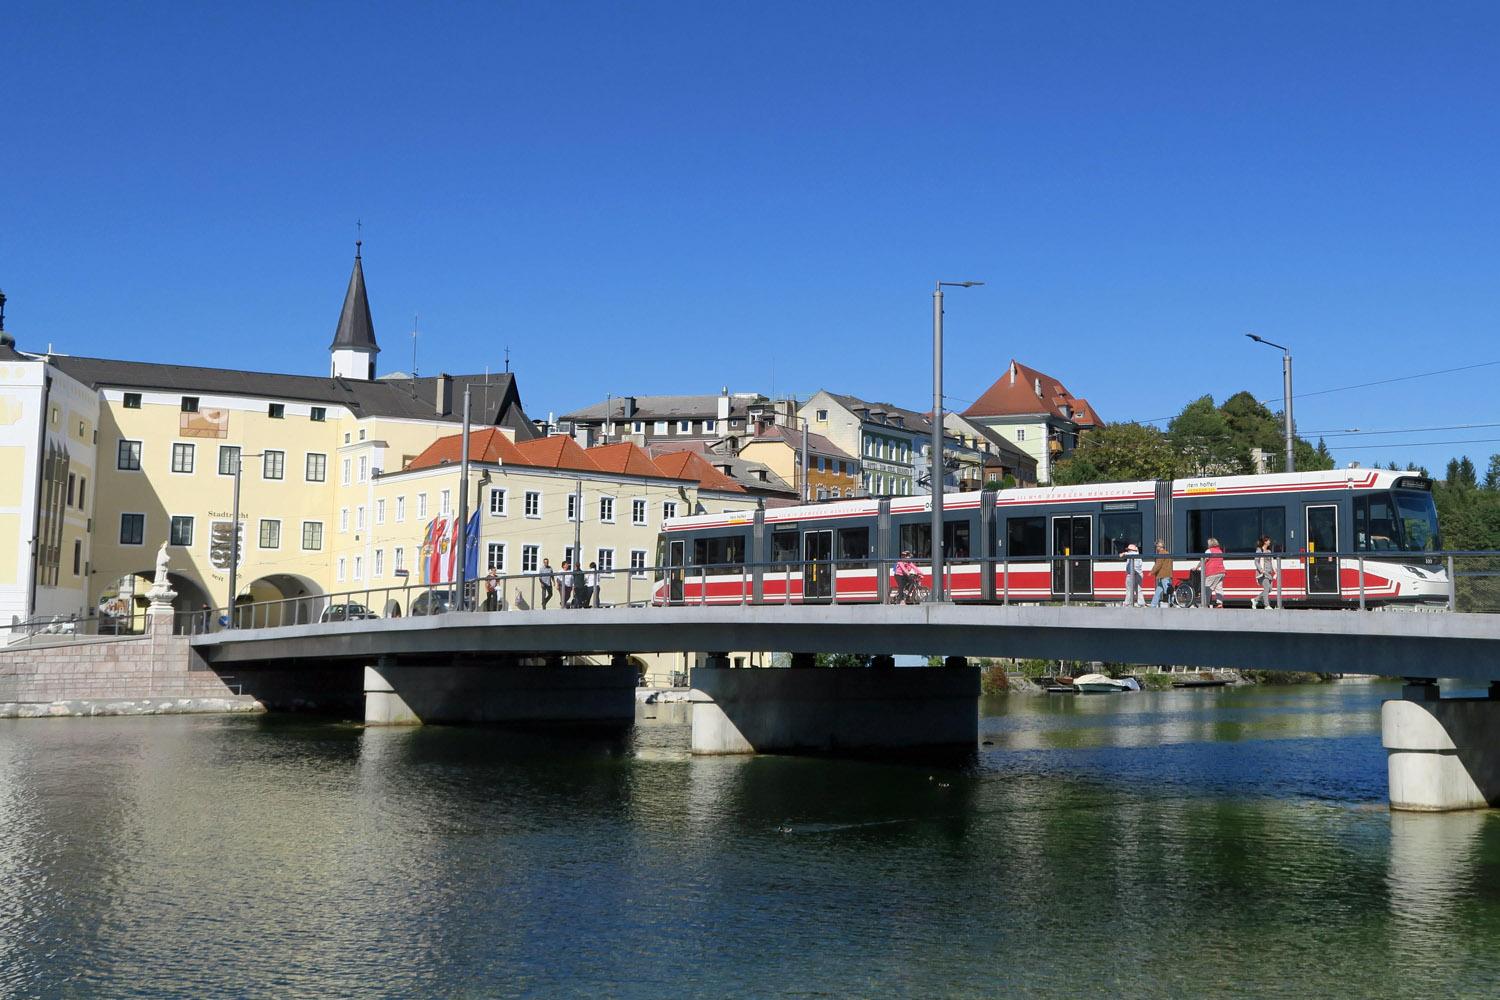 Eine Brücke überspannt einen Fluss, auf der Menschen zu Fuß laufen und eine S-Bahn fährt. Im Hintergrund sind Häuser und blauer Himmel.